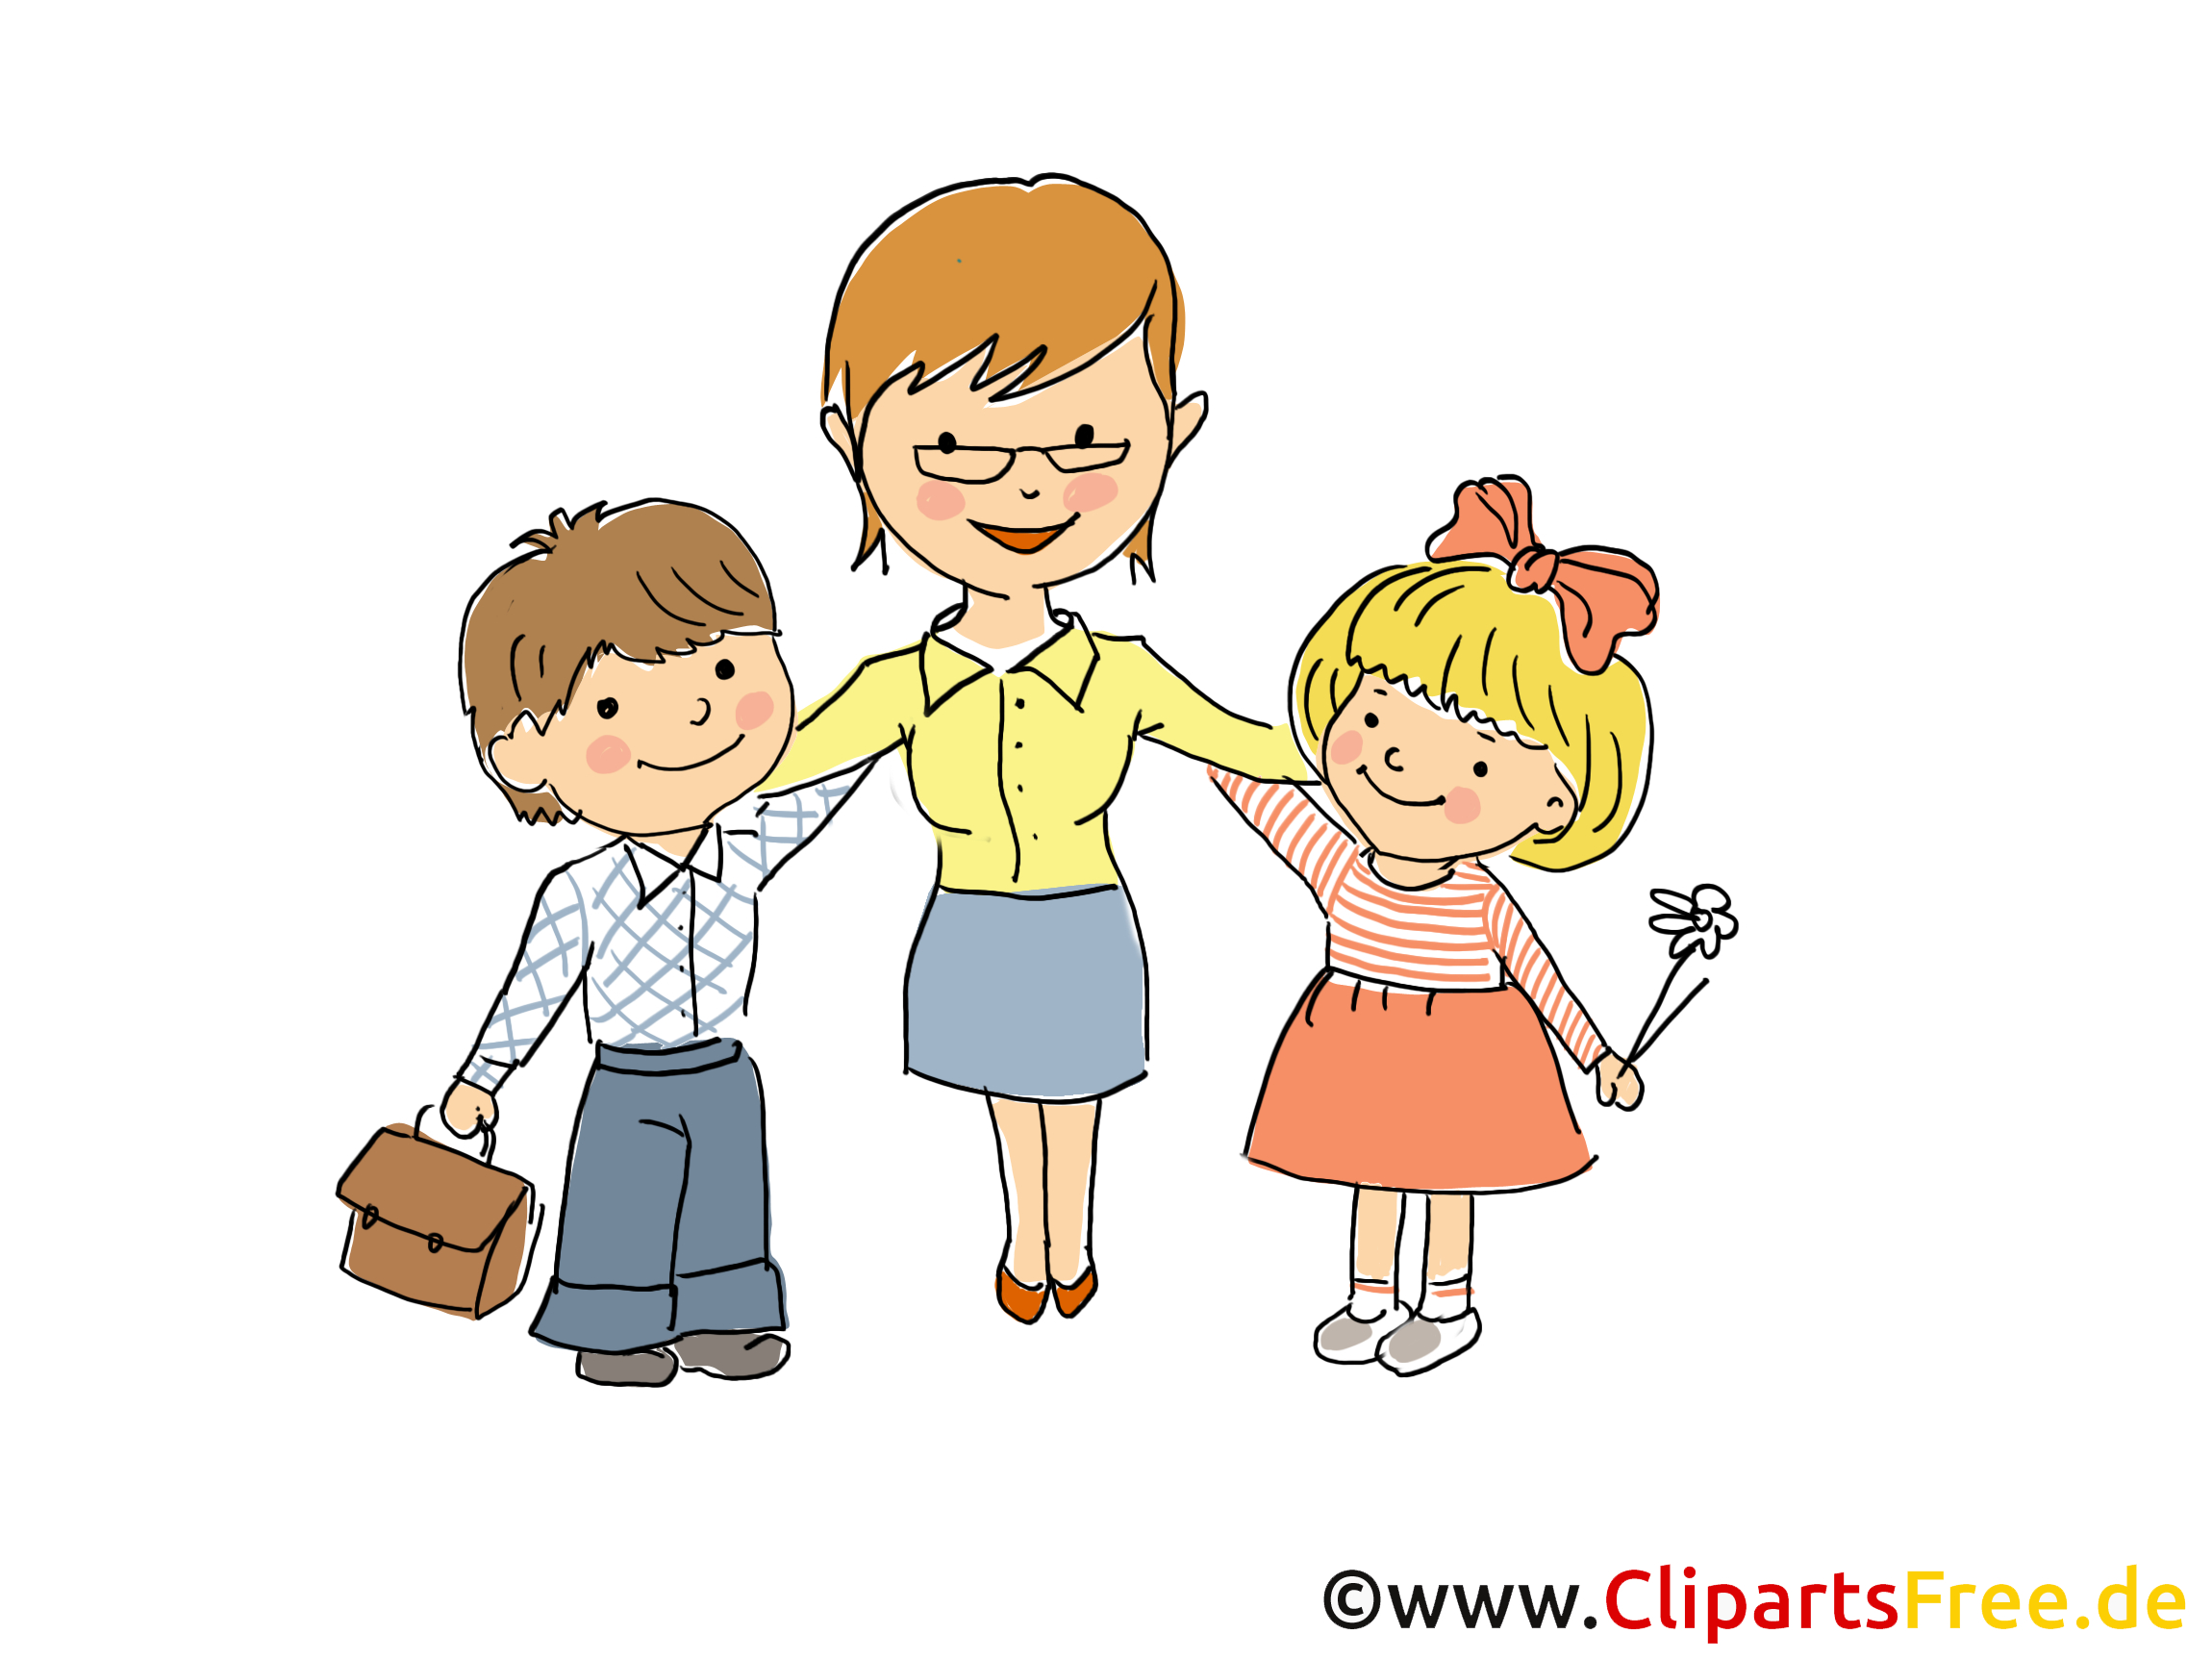 Begrüßung Kinder Clipart 5 » Clipart Station verwandt mit Bilder Kinder Clipart Kostenlos